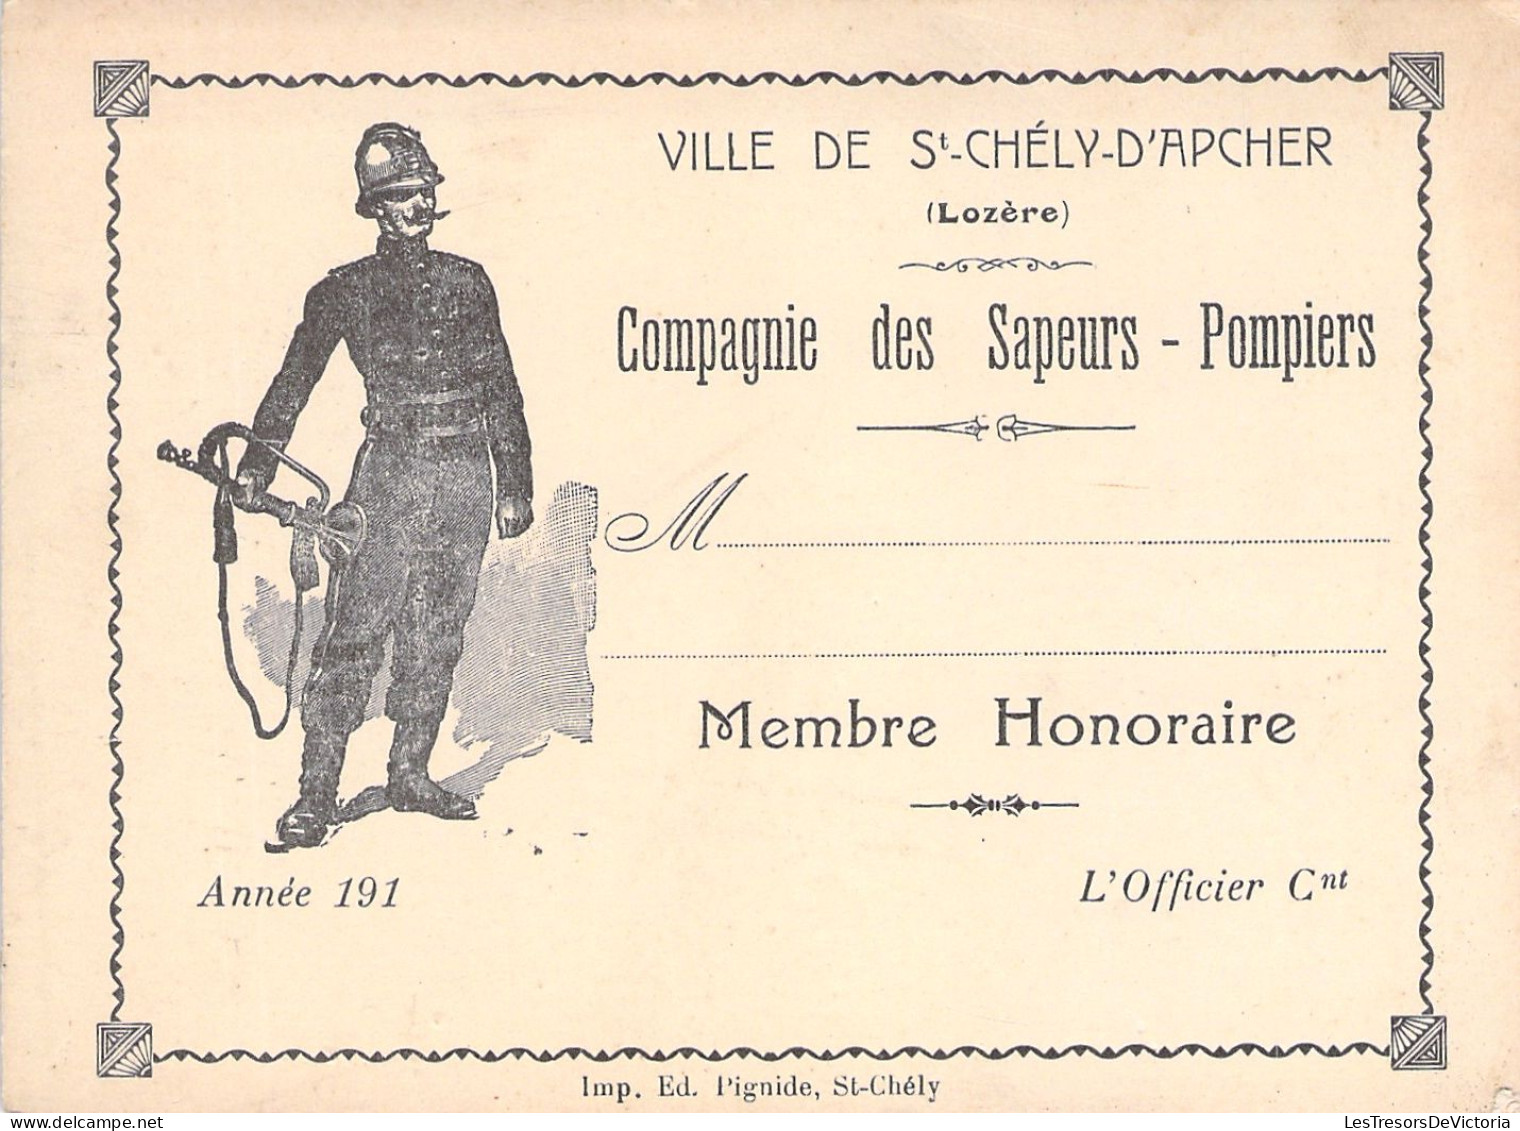 Ville De St Chely D'apcher - Lozere - Compagnie Des Sapeurs Pompiers - Membre Honoraire - Carte De Membre - 12x9cm - Lidmaatschapskaarten